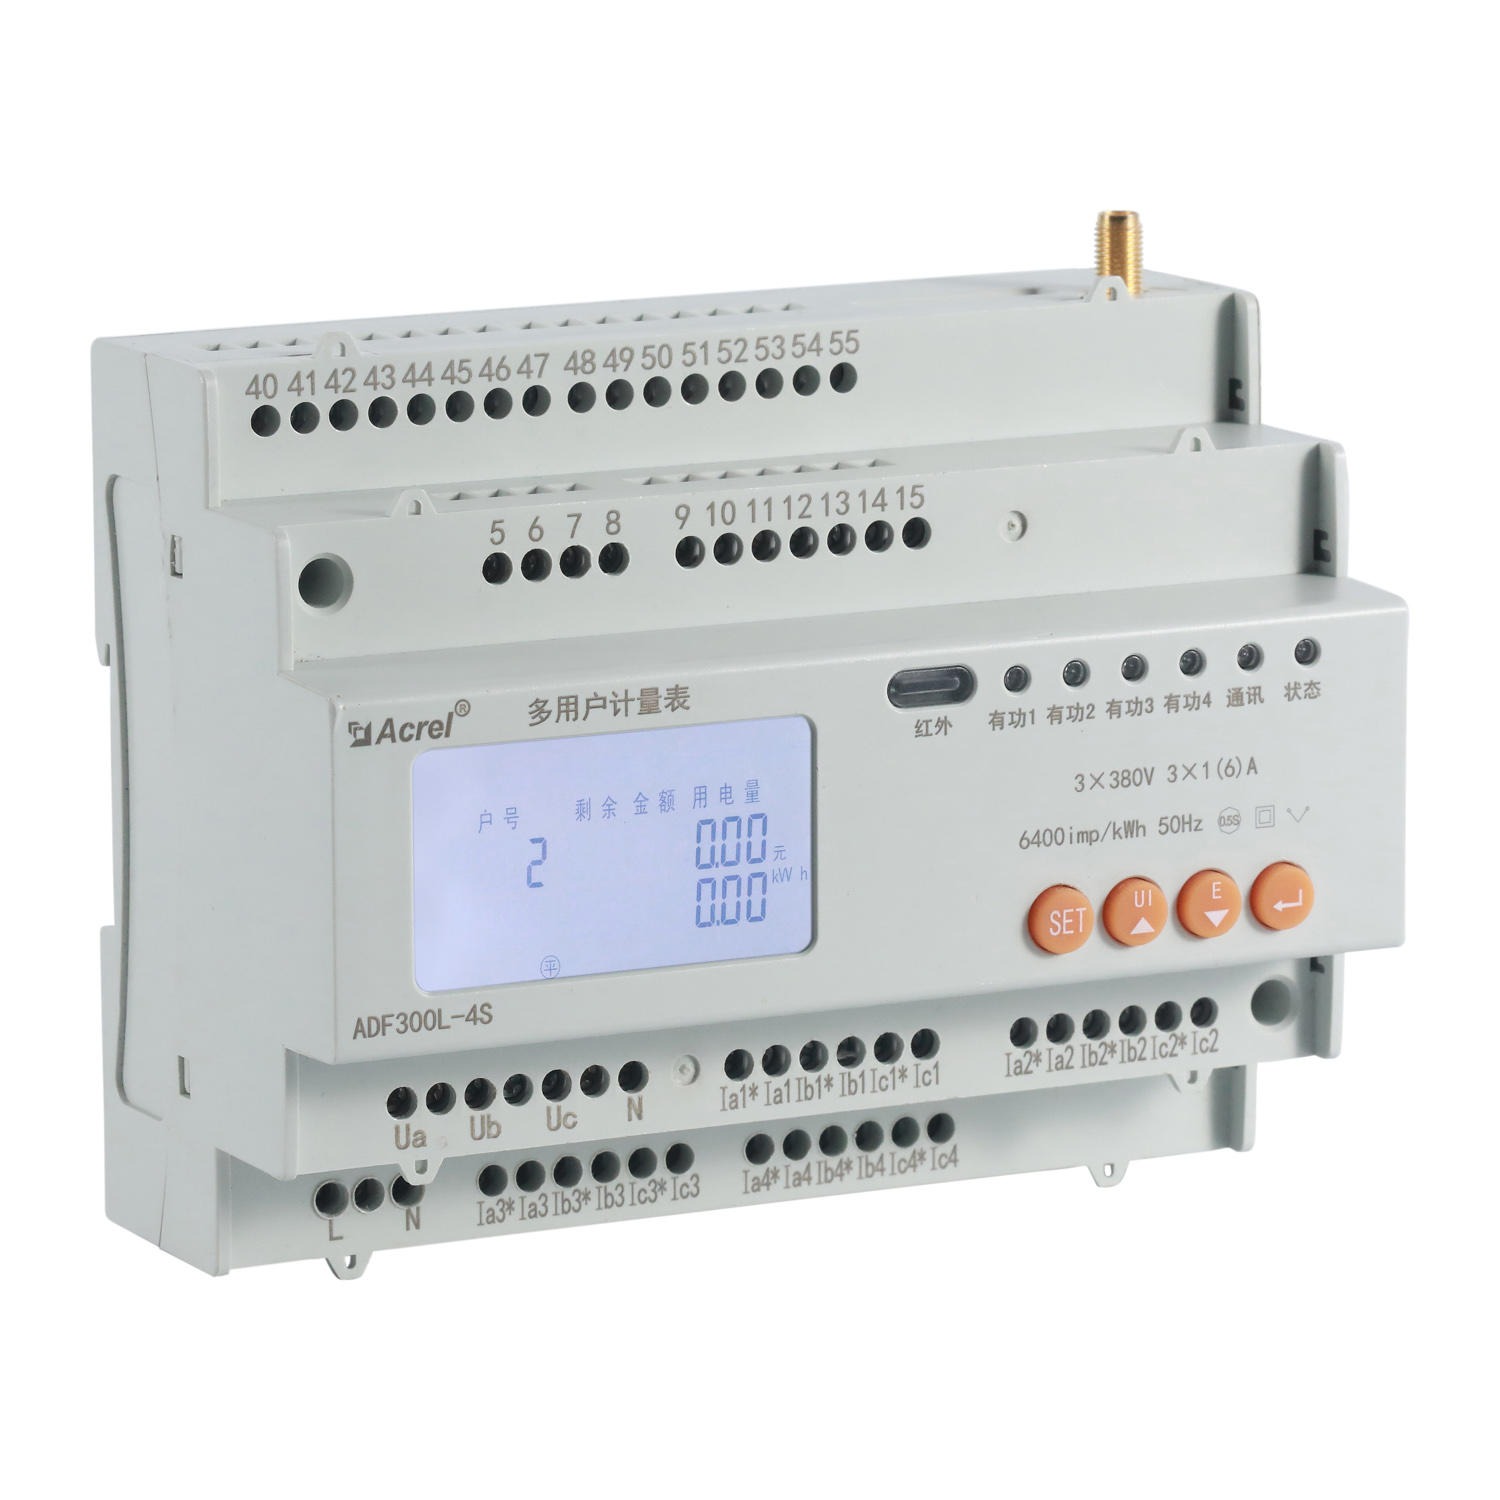 安科瑞 小区适用 ADF300-II-15D(5S) 单三相回路混合用电多户计量表